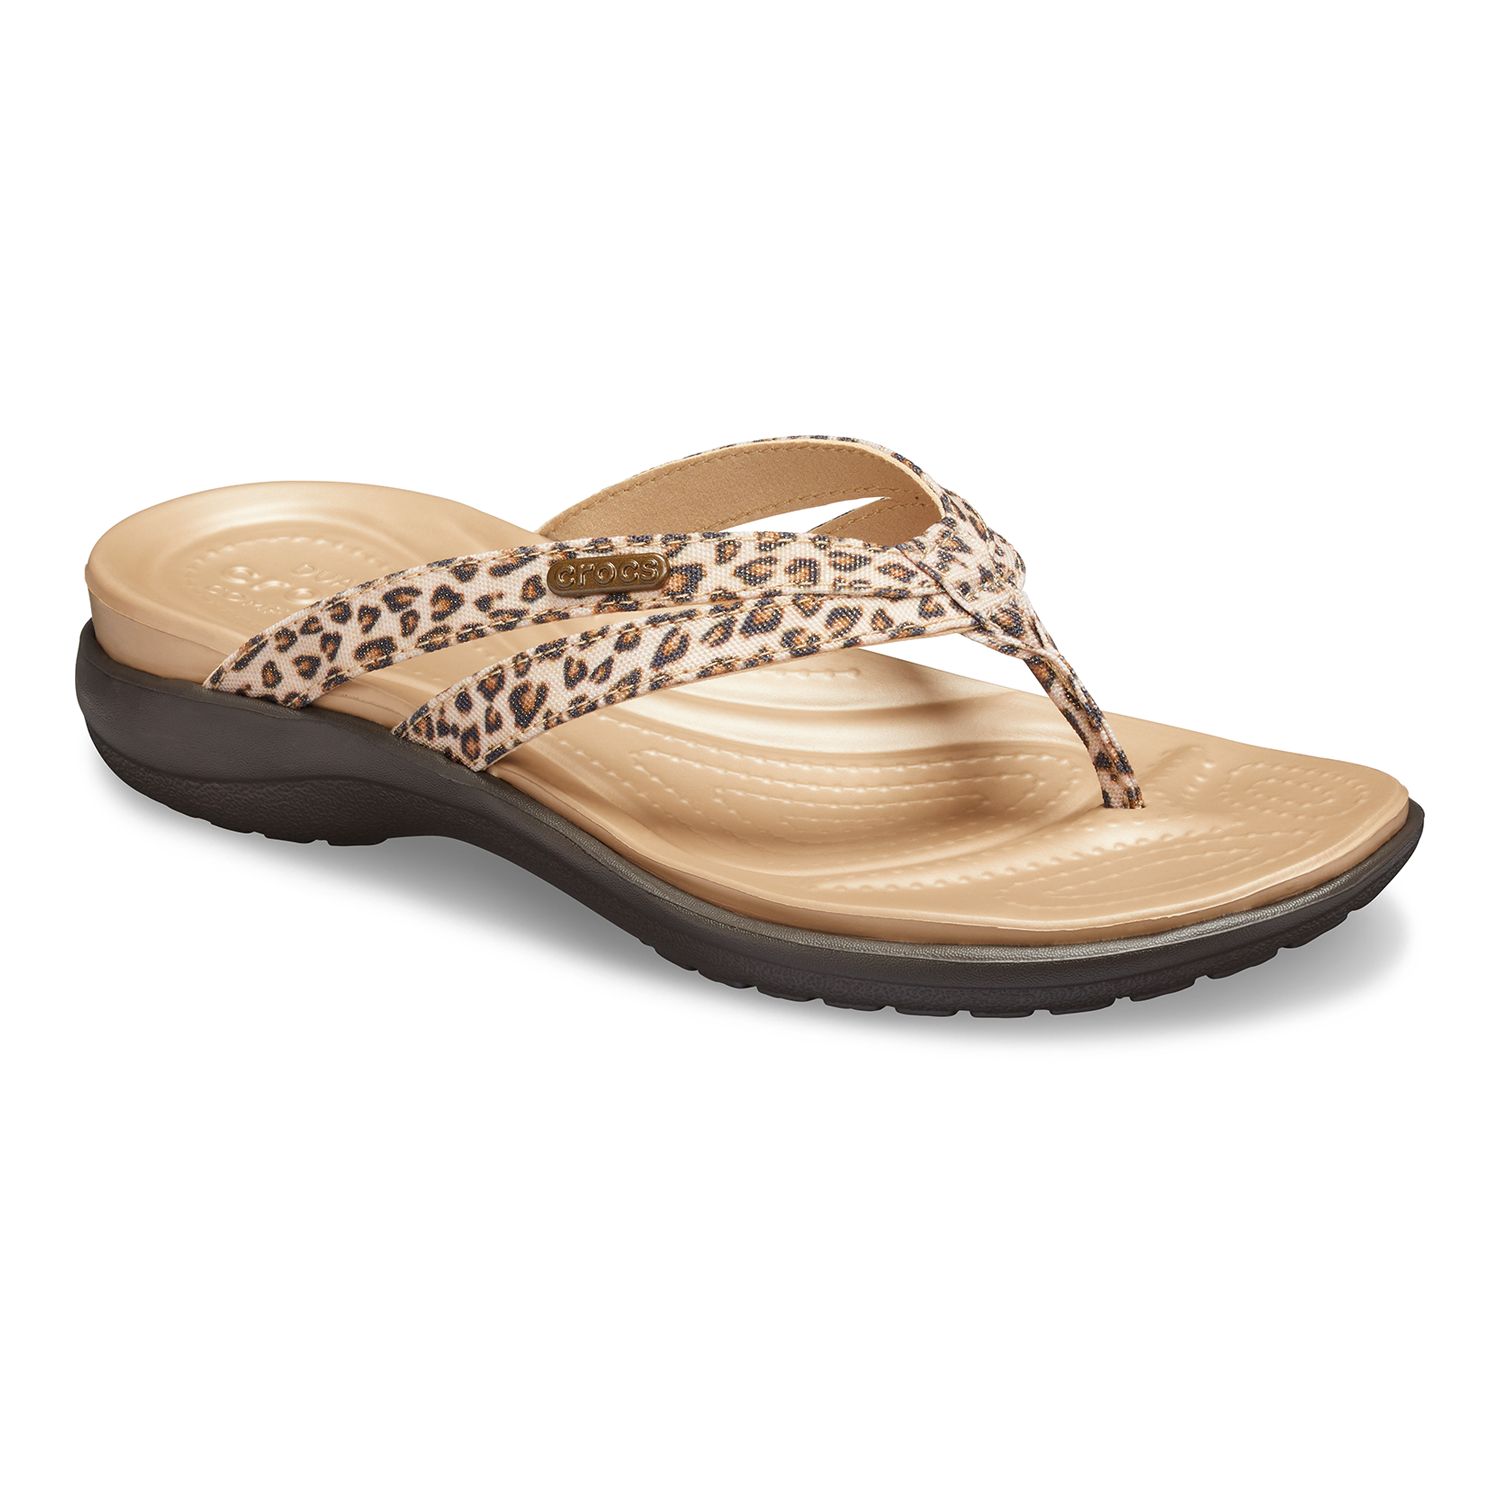 leopard crocs sandals